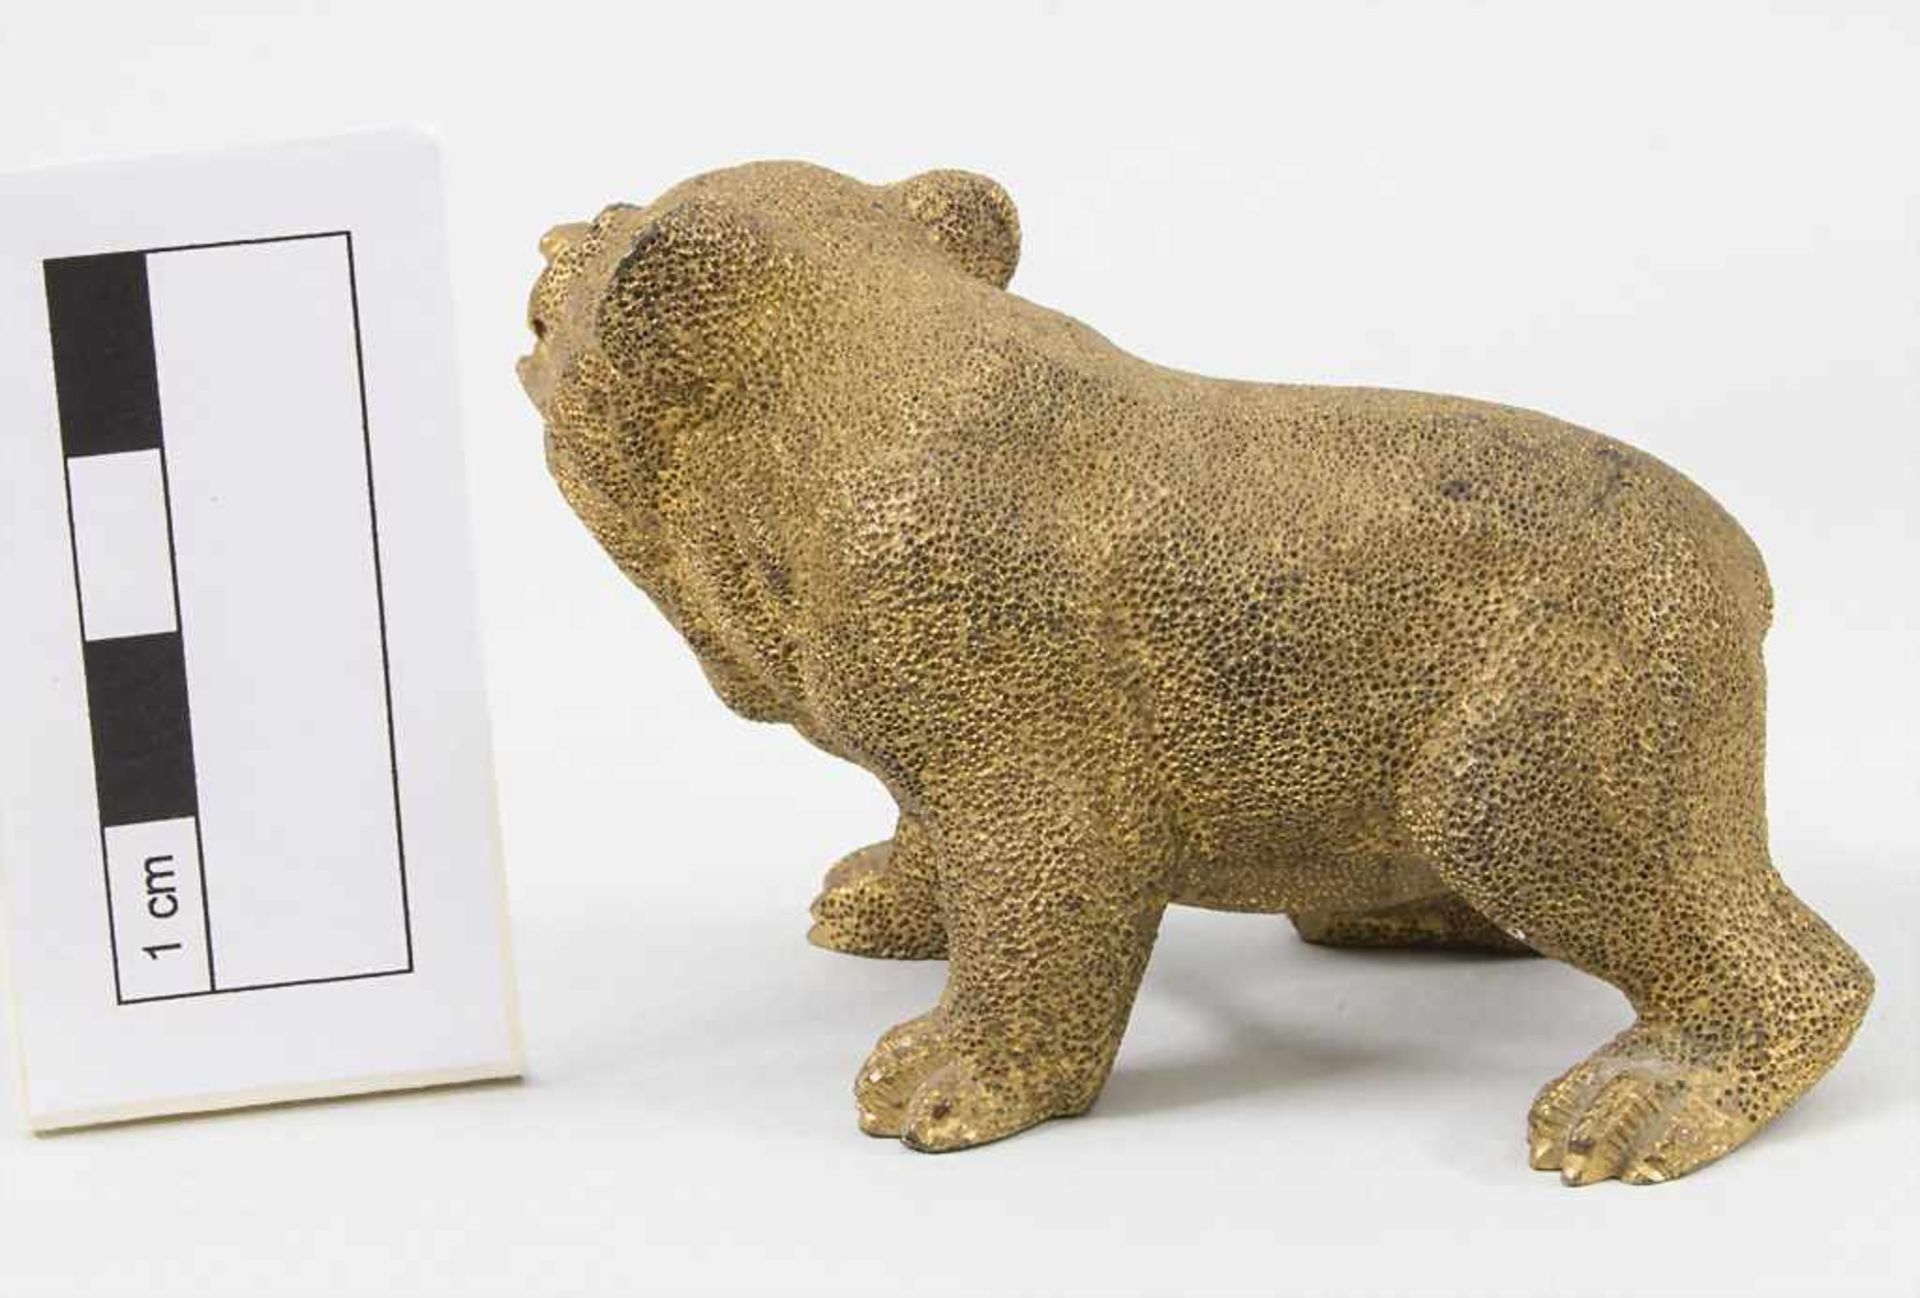 Tierfigur 'Bär' / An animal figure 'bear', deutsch 19. Jh. - Image 3 of 4